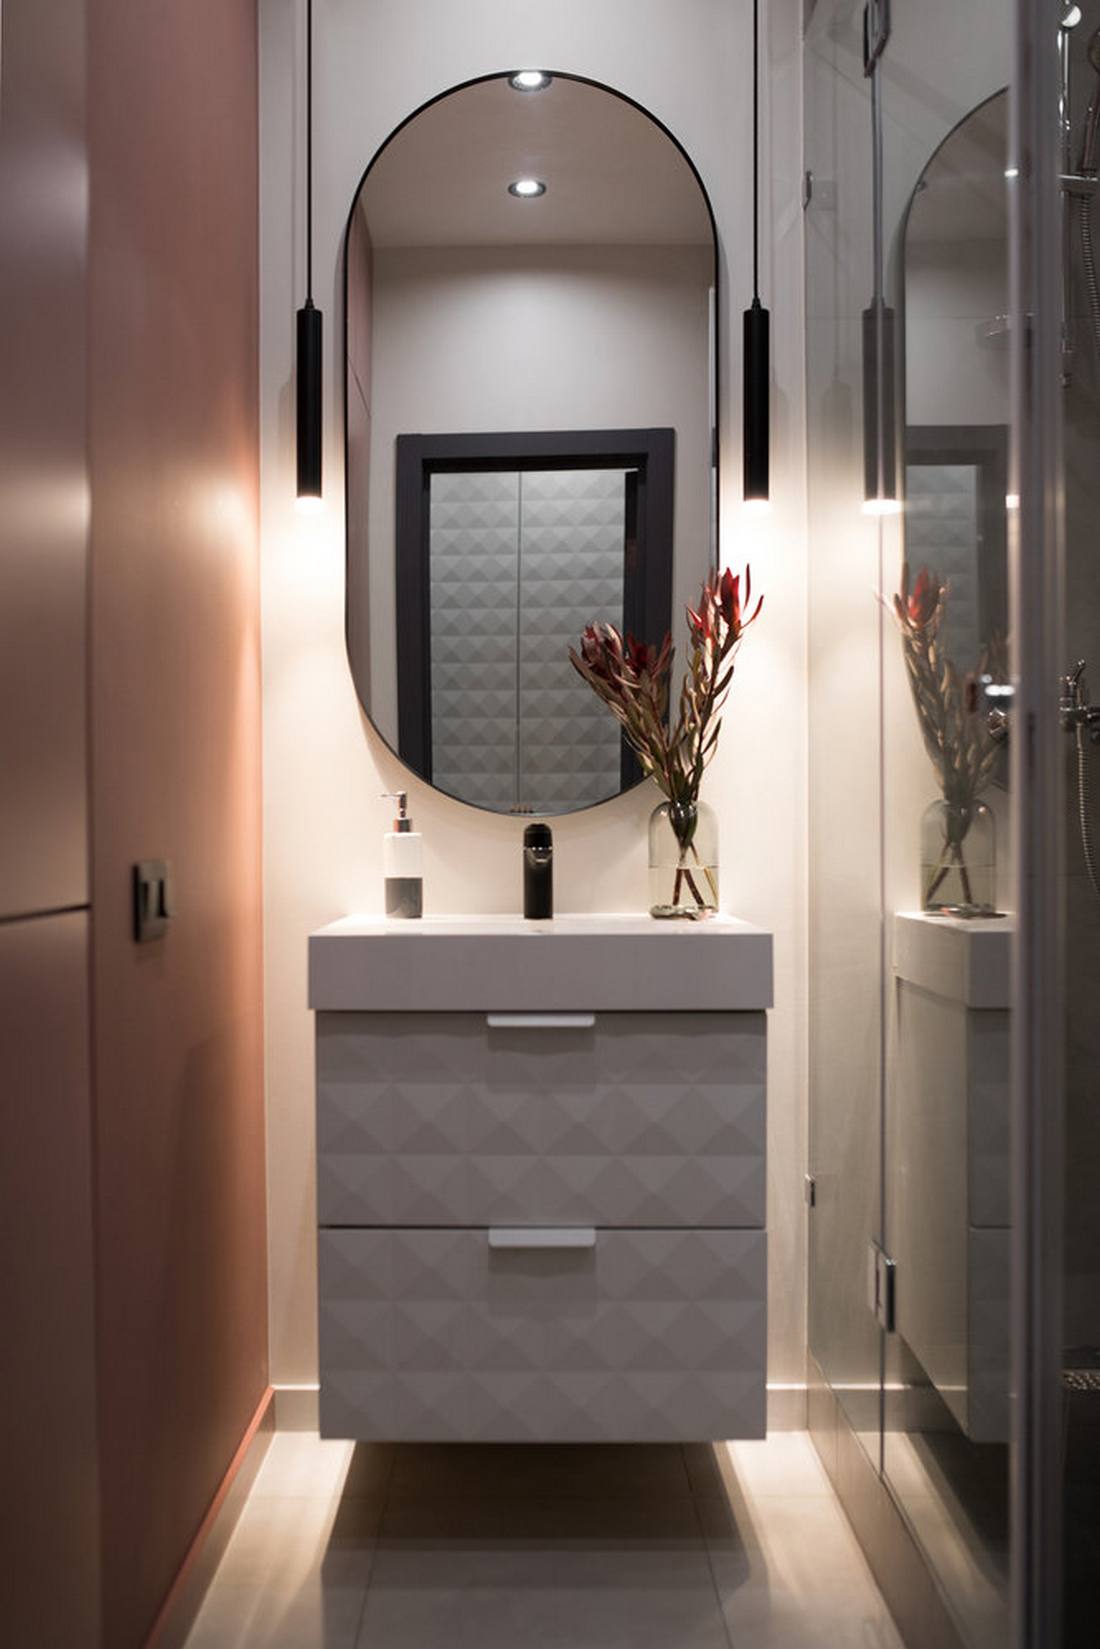 Phòng tắm nhỏ xinh đẹp với chiếc tủ lưu trữ kết hợp bồn rửa màu trắng gắn tường tiện lợi. Tấm gương hình oval trên tường phản chiếu ánh sáng từ đèn âm trần và cặp đèn thả duyên dáng, ấm áp.